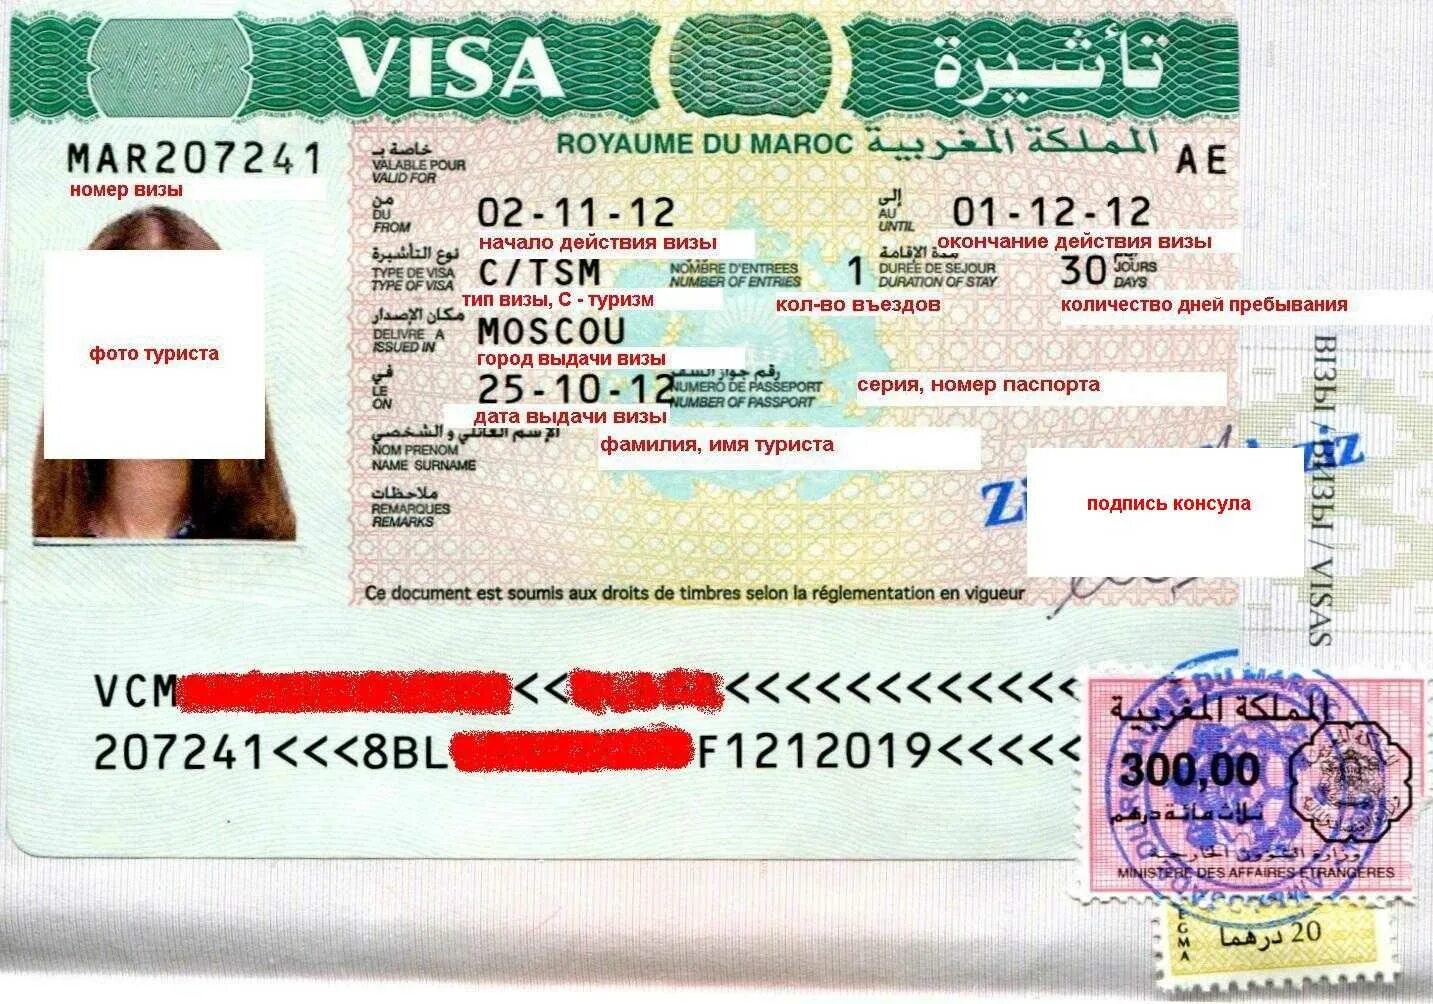 Tourist visa. Виза. Долгосрочная виза. Туристическая виза. Марокко виза.